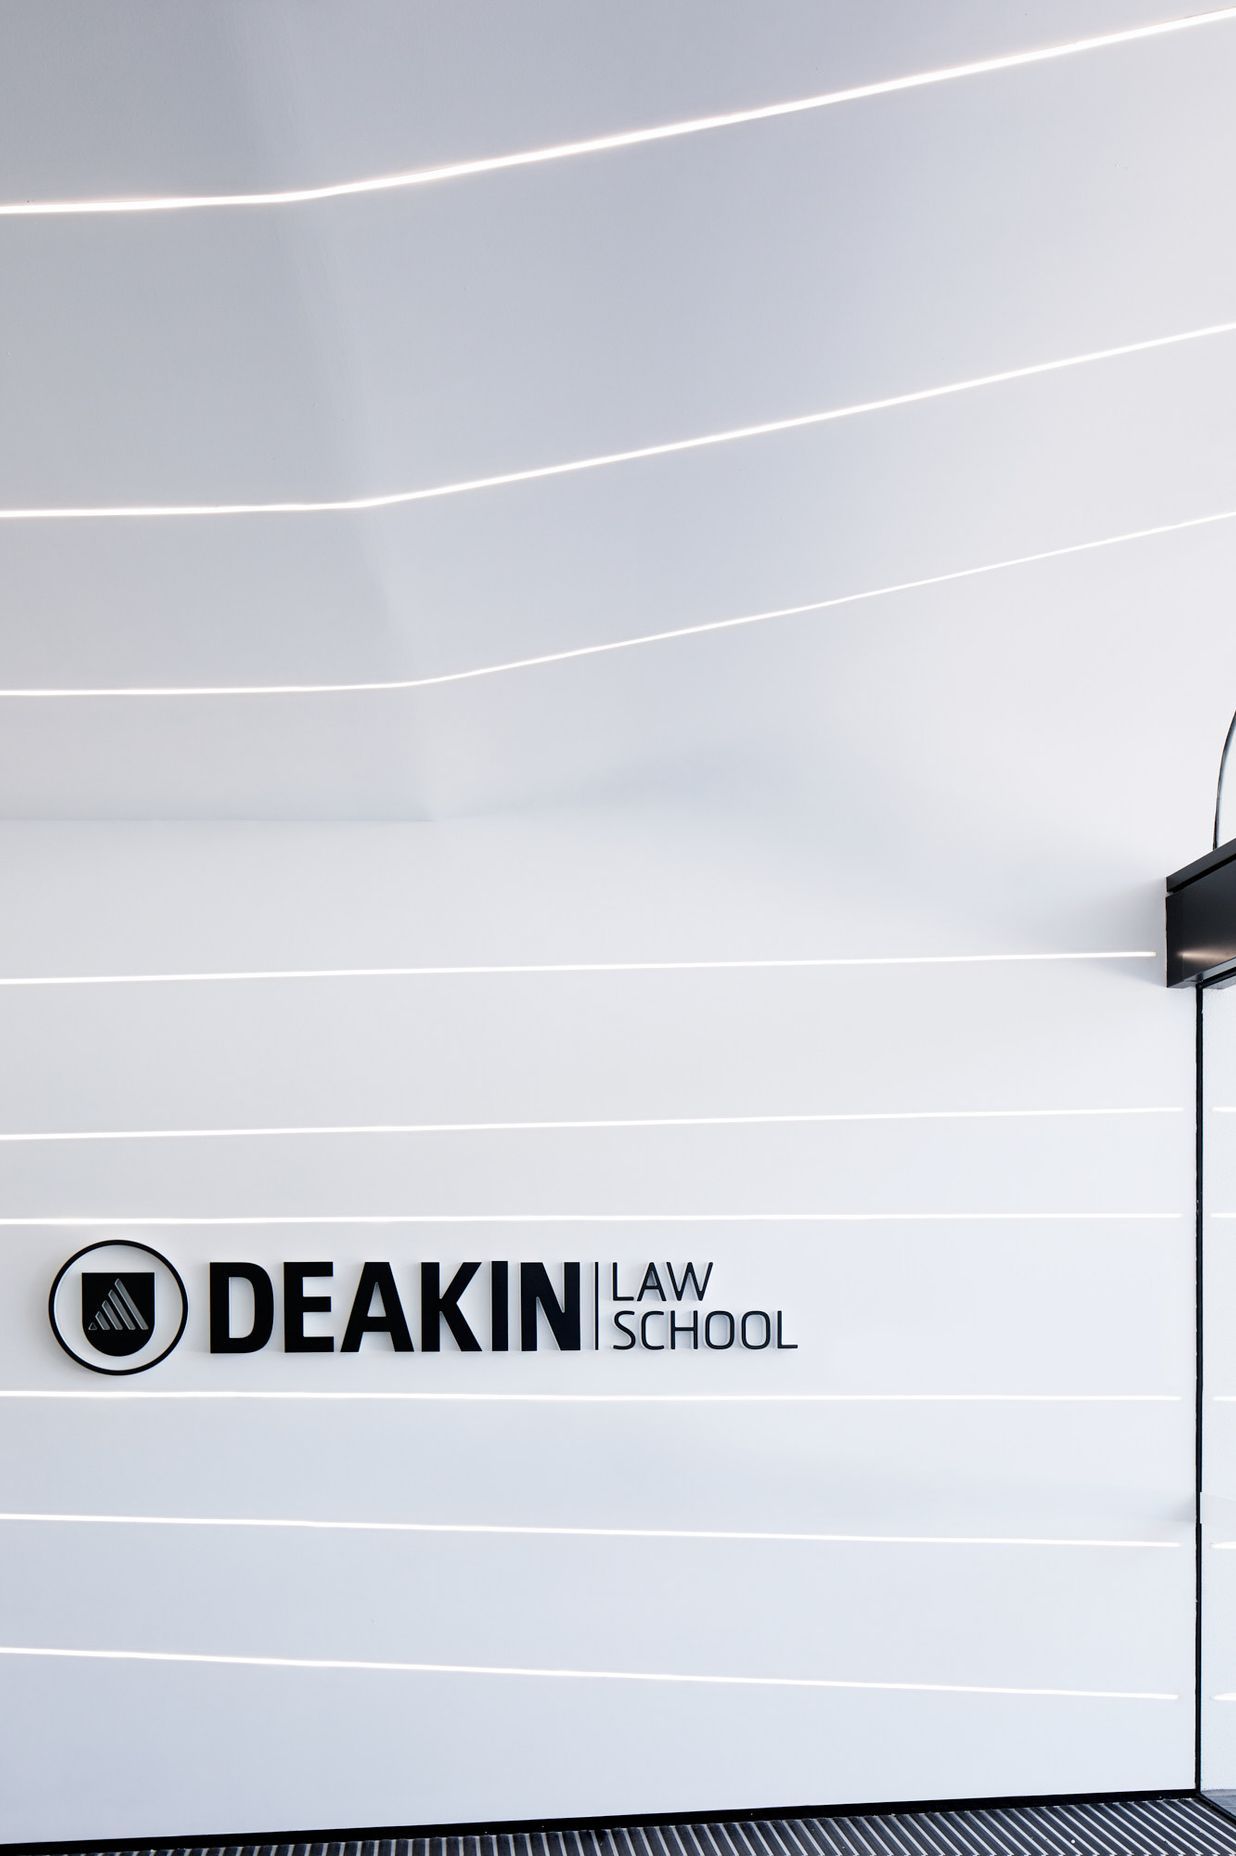 Deakin University Law School